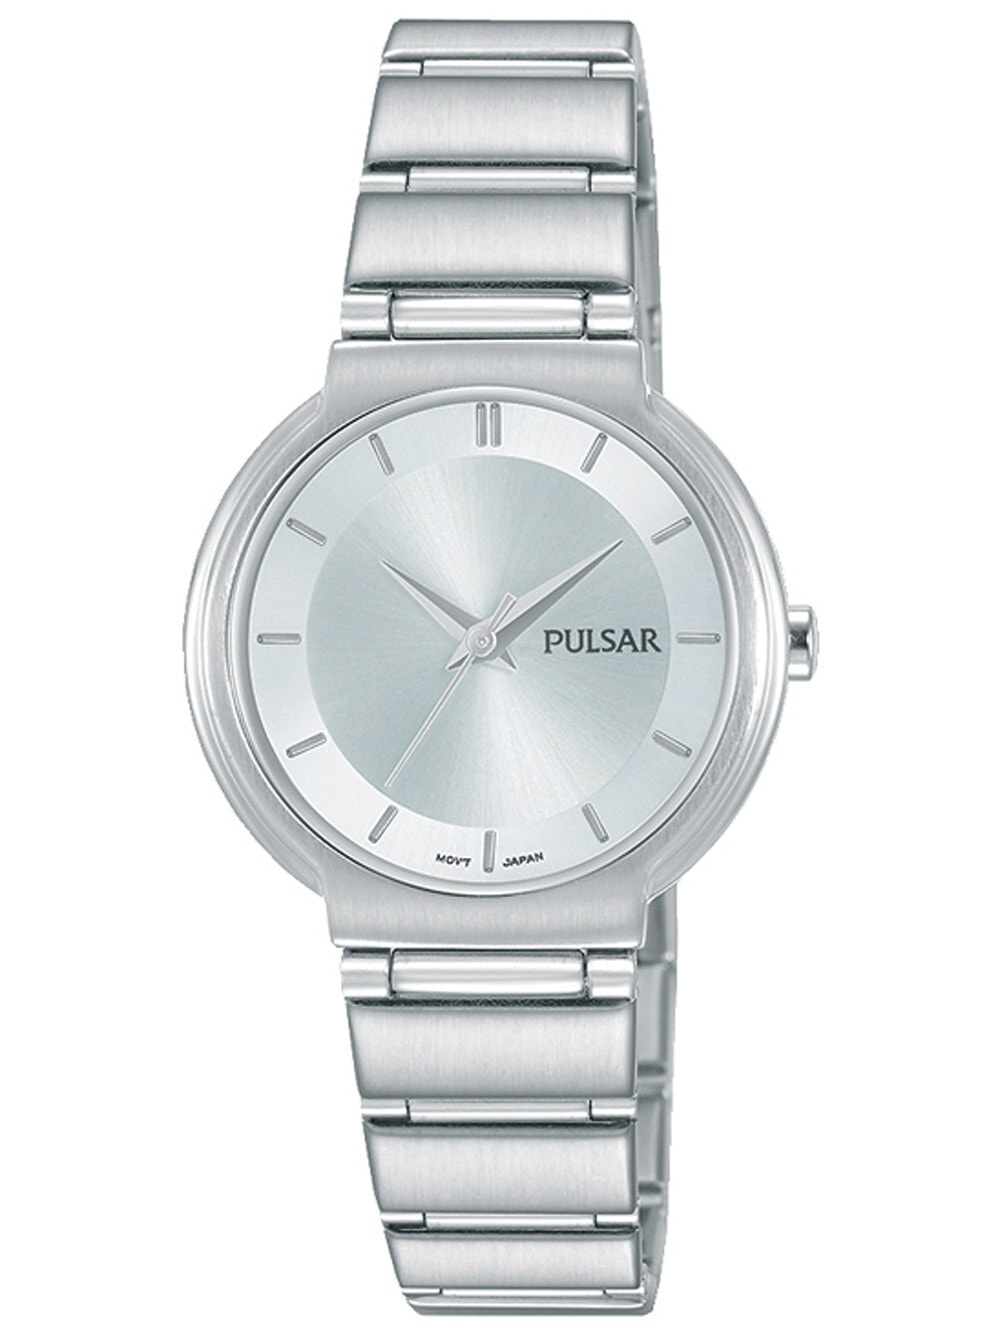 Женские наручные кварцевые часы Pulsar  ремешок из нержавеющей стали. Водонепроницаемость-5 АТМ. Прочное, минеральное стекло защищает ваши часы от непроизвольных травм.